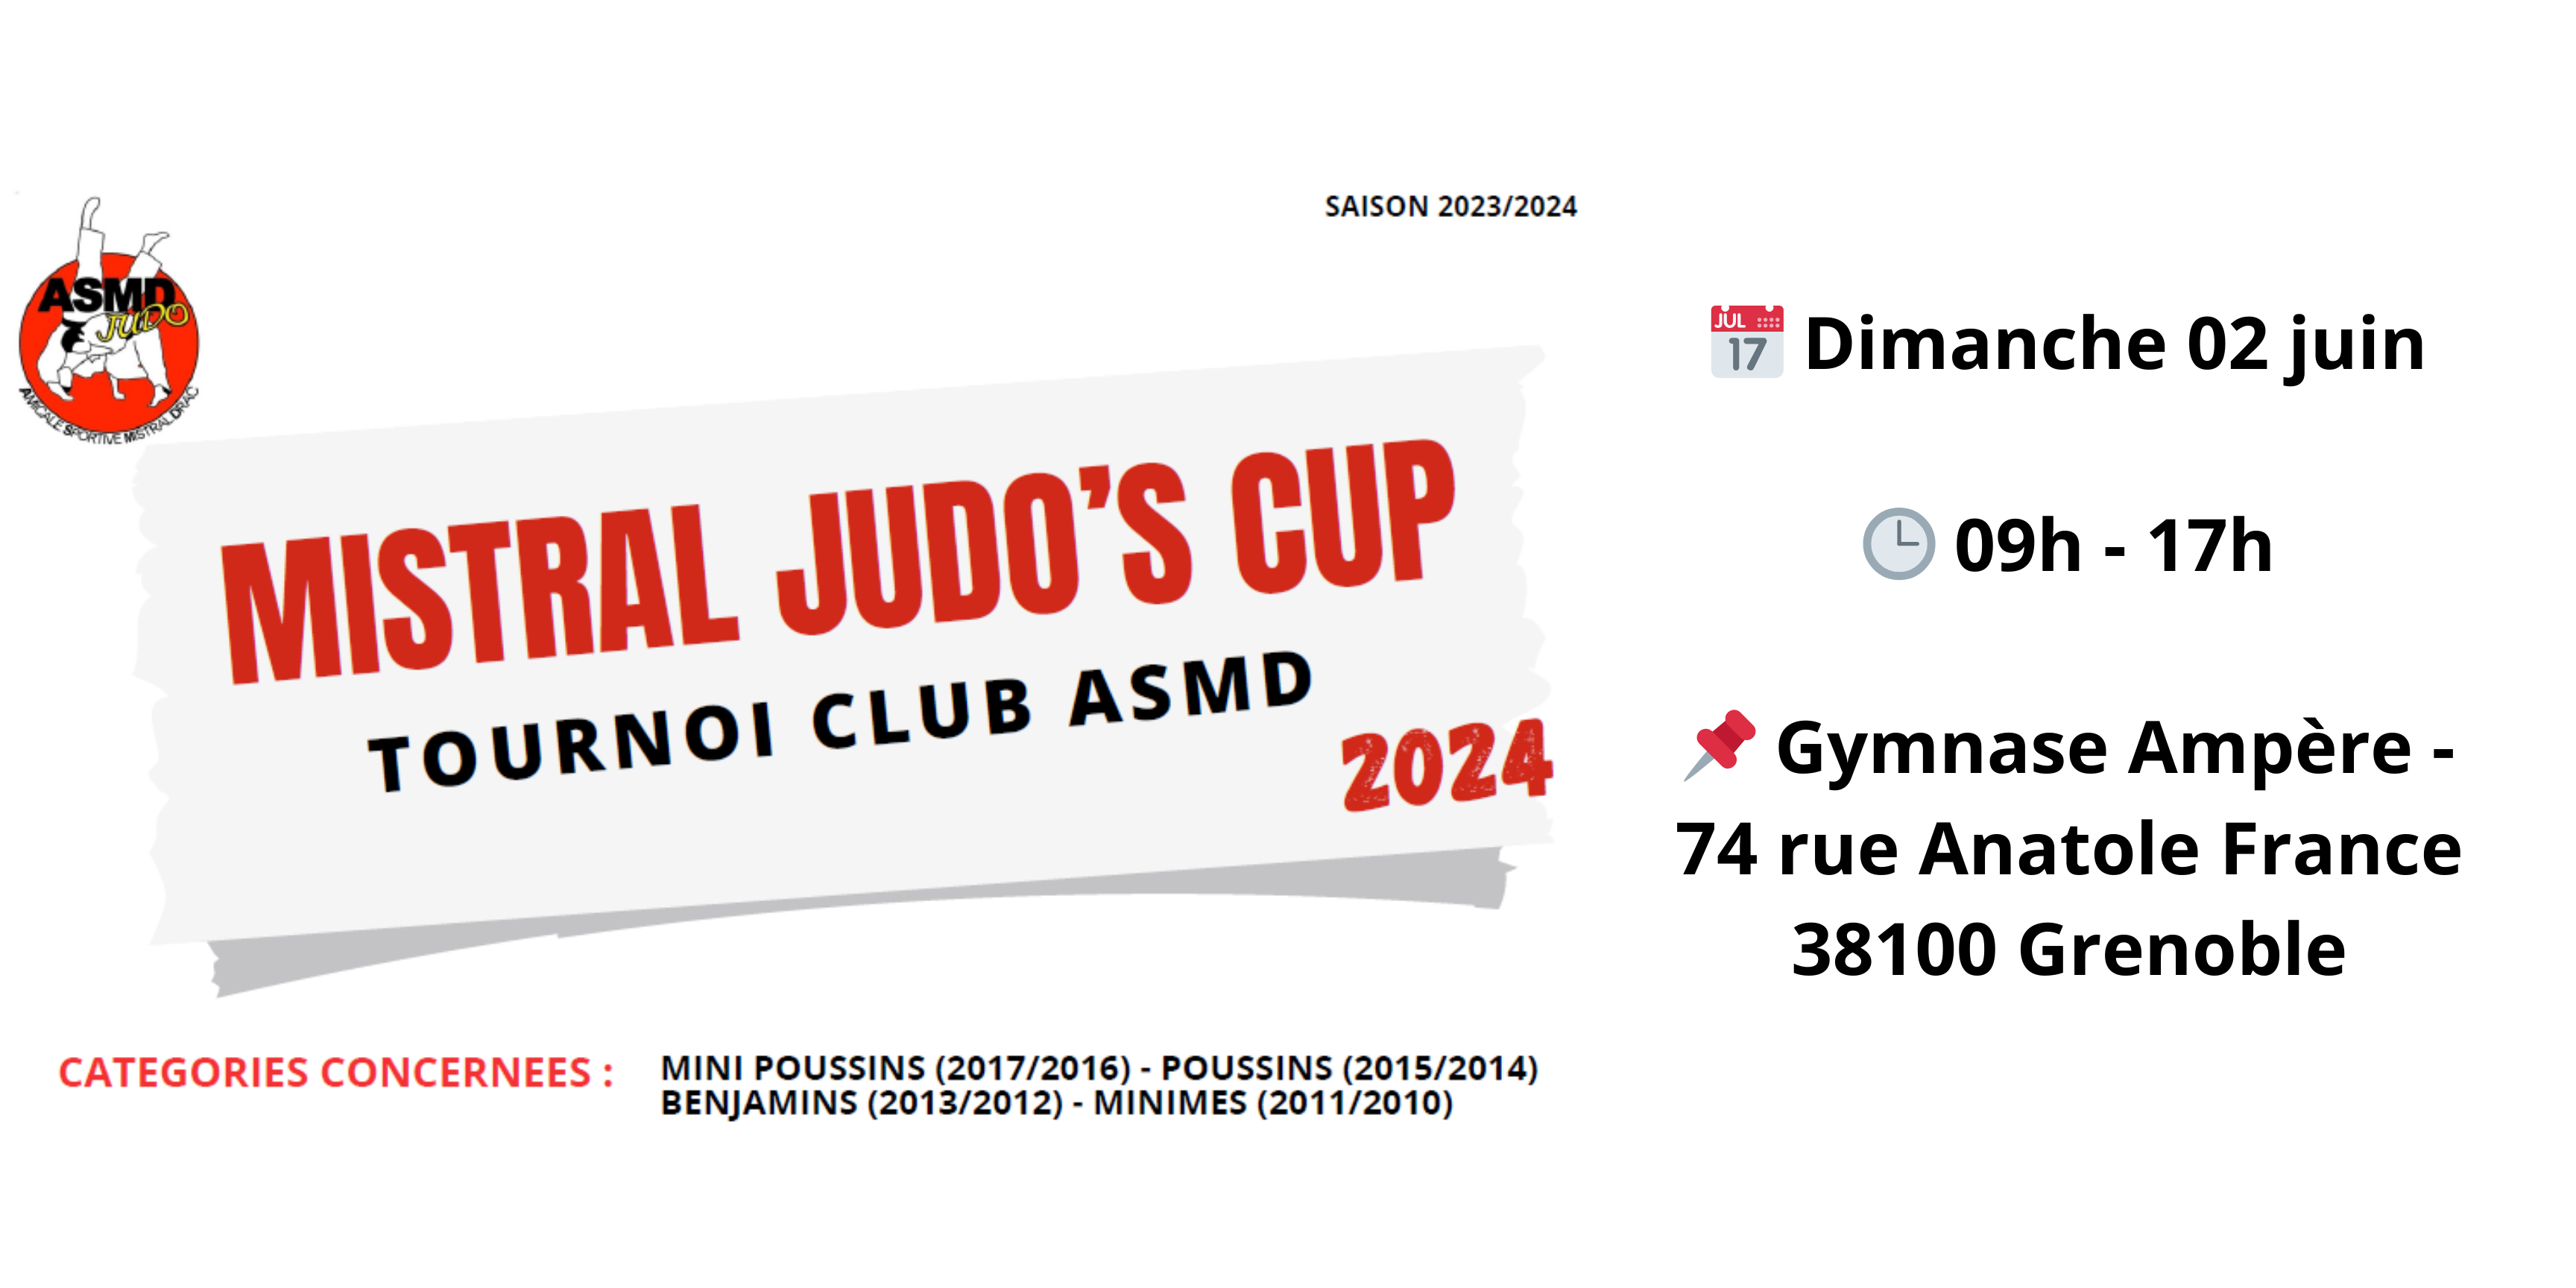 Présentation du tournoi annuel de l'ASMD Judo, le Mistral Judo's Cup